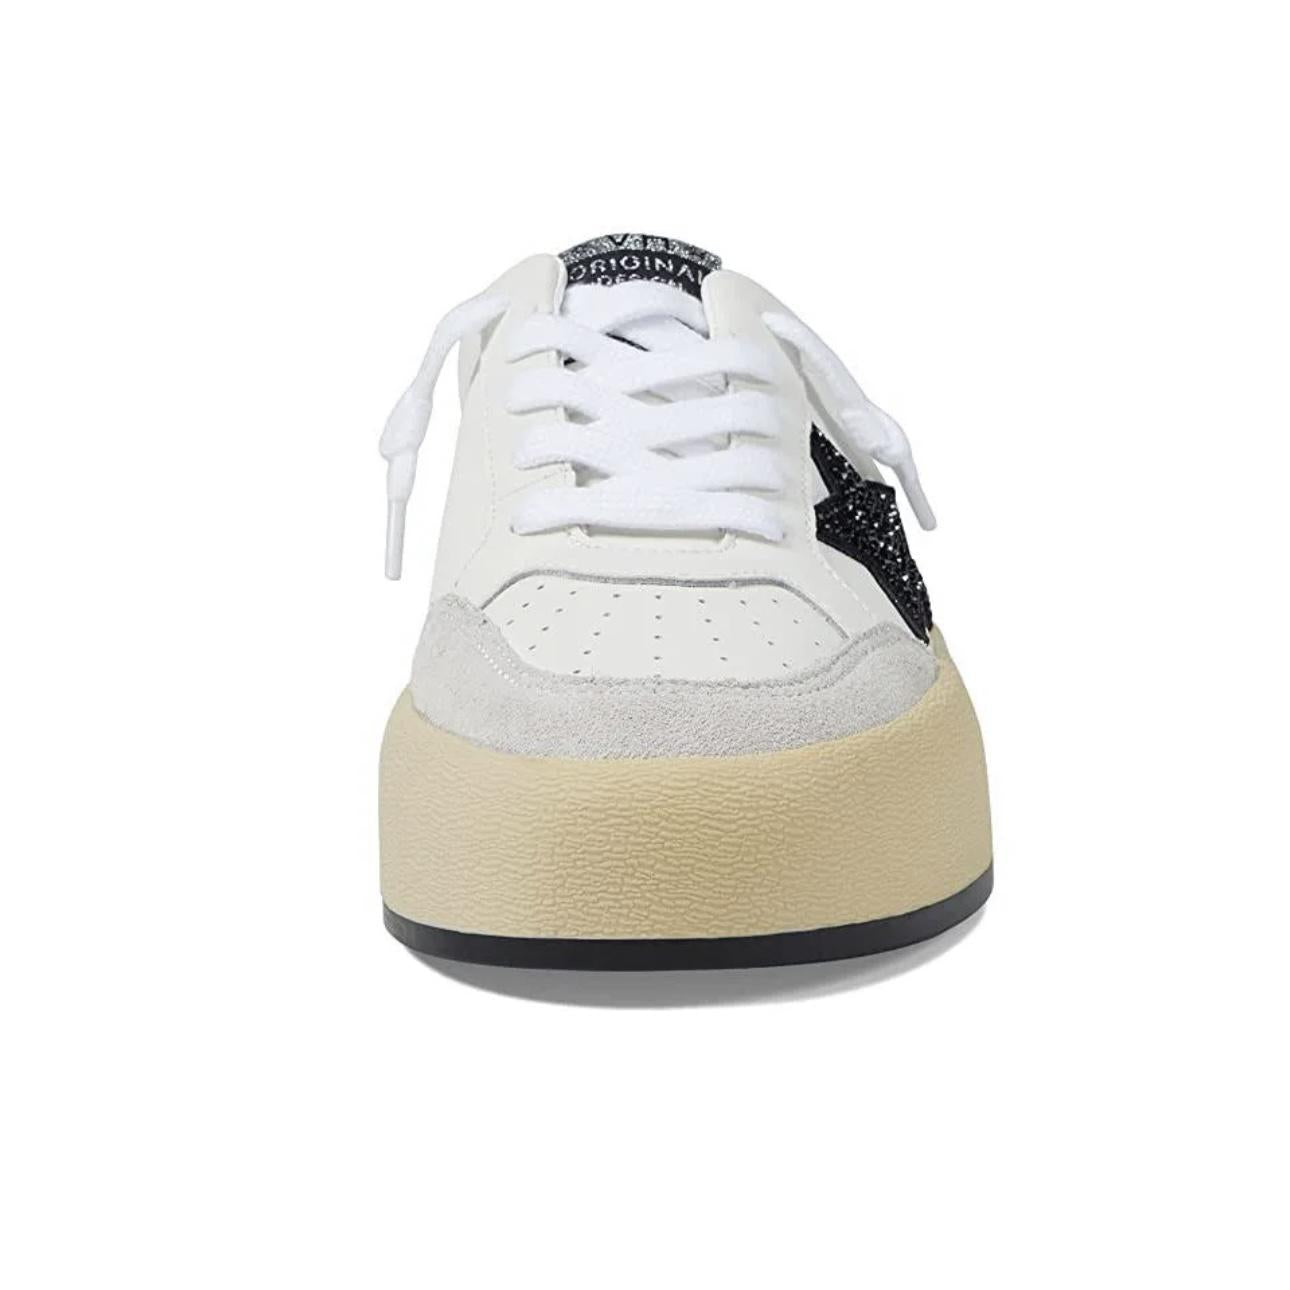 Val 1 Mule Sneaker White Multi *FINAL SALE*